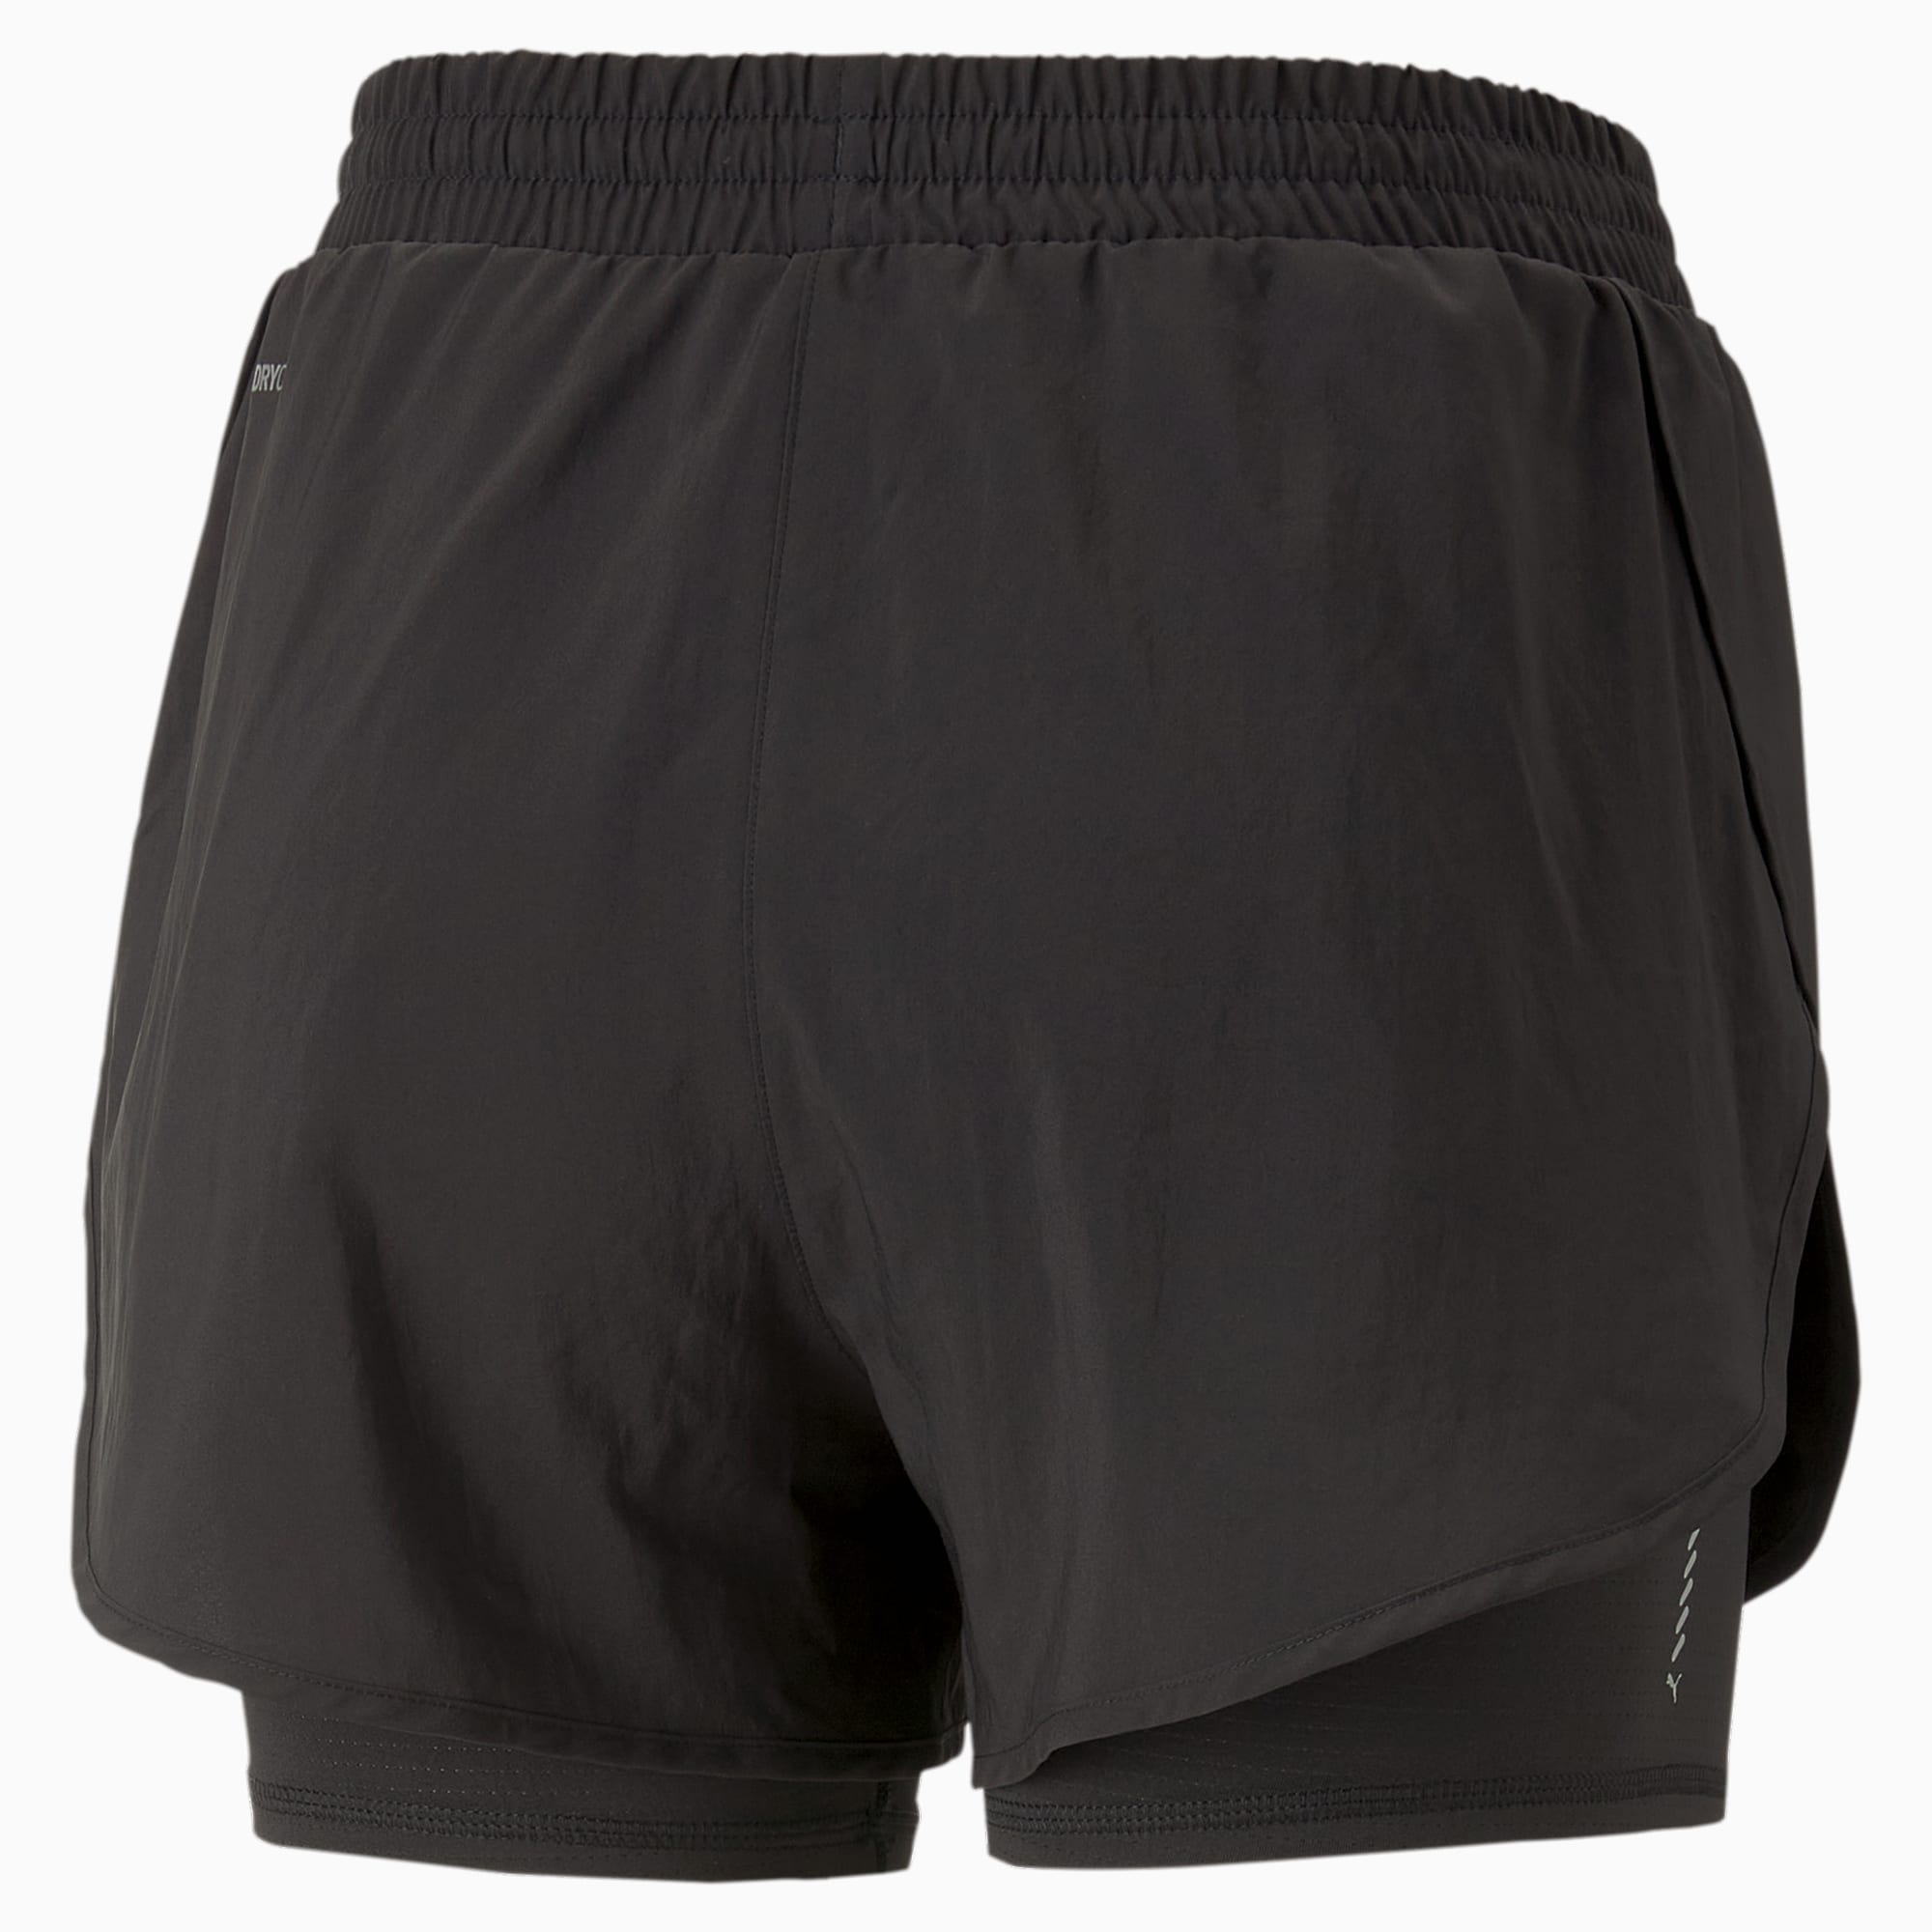 ELLE Sport 2-in-1 Woven Shorts